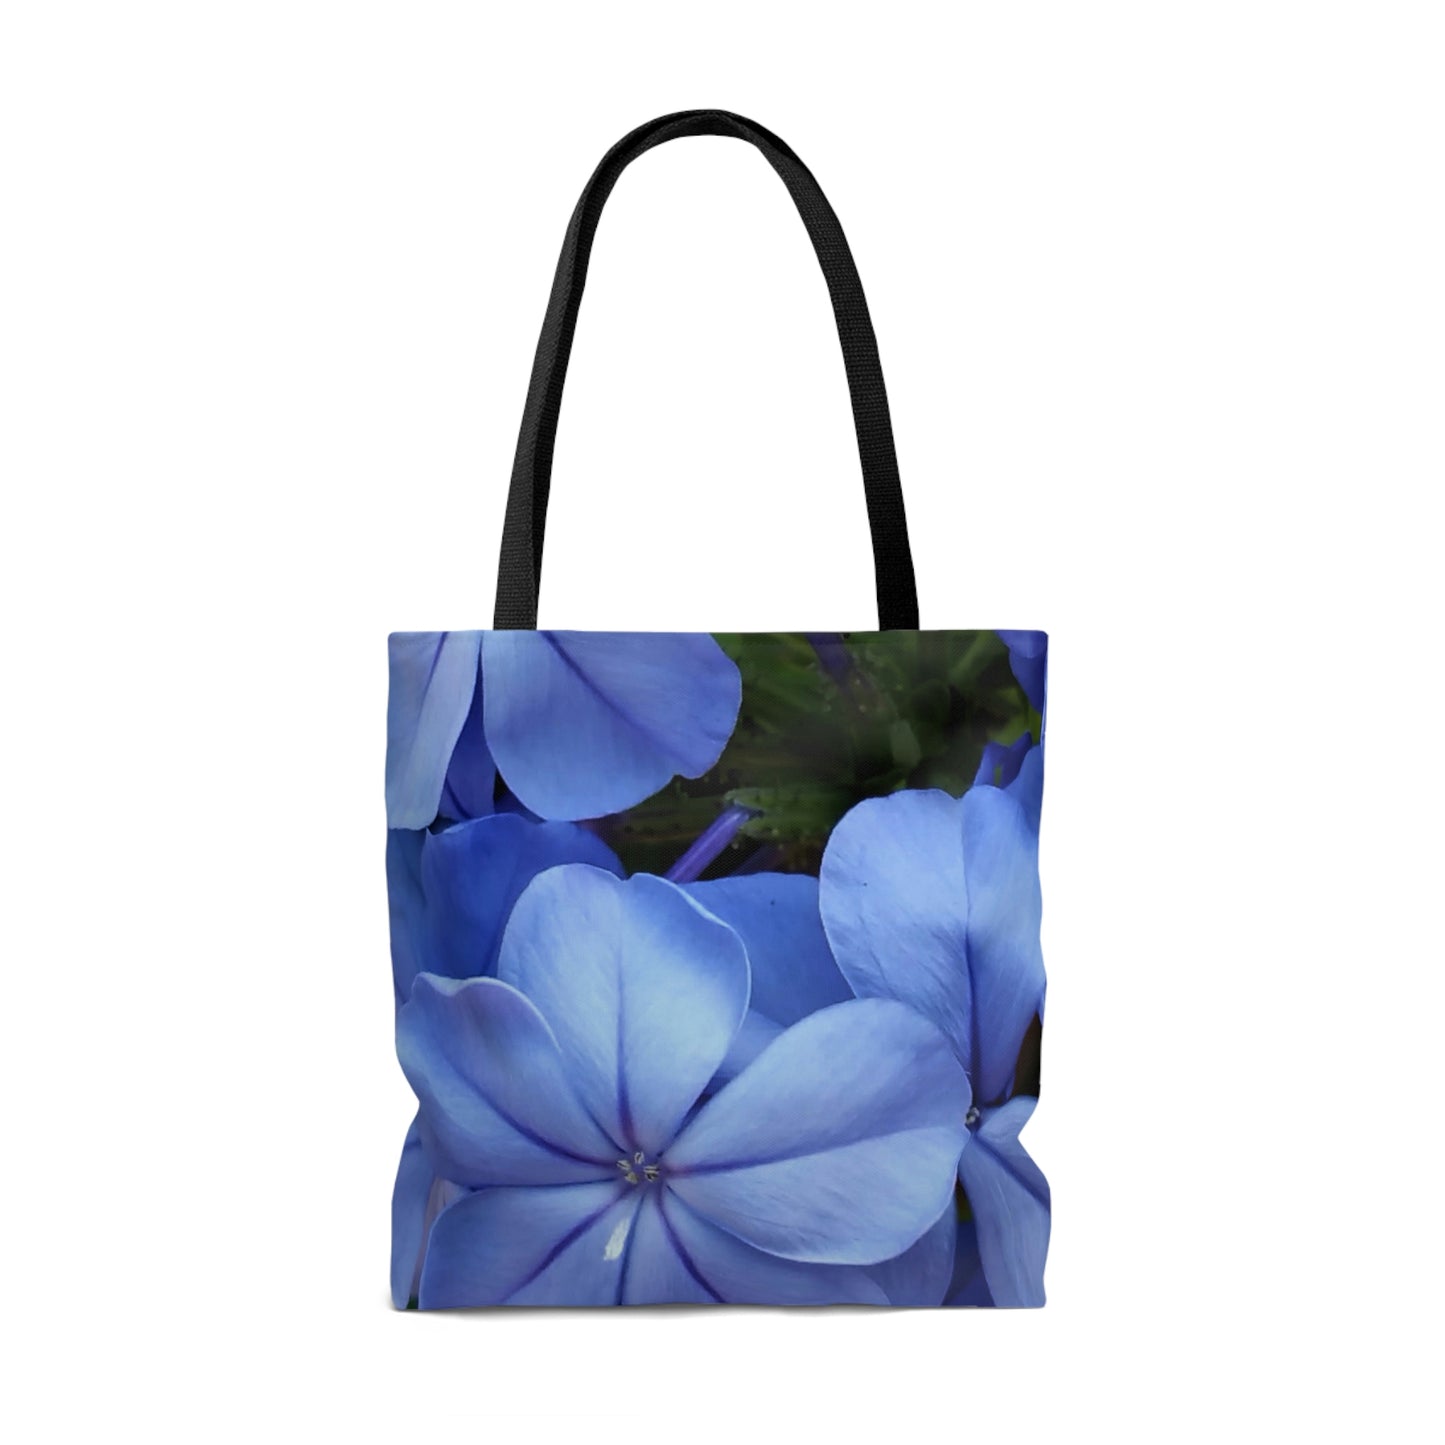 Blue Floral Tote Bag